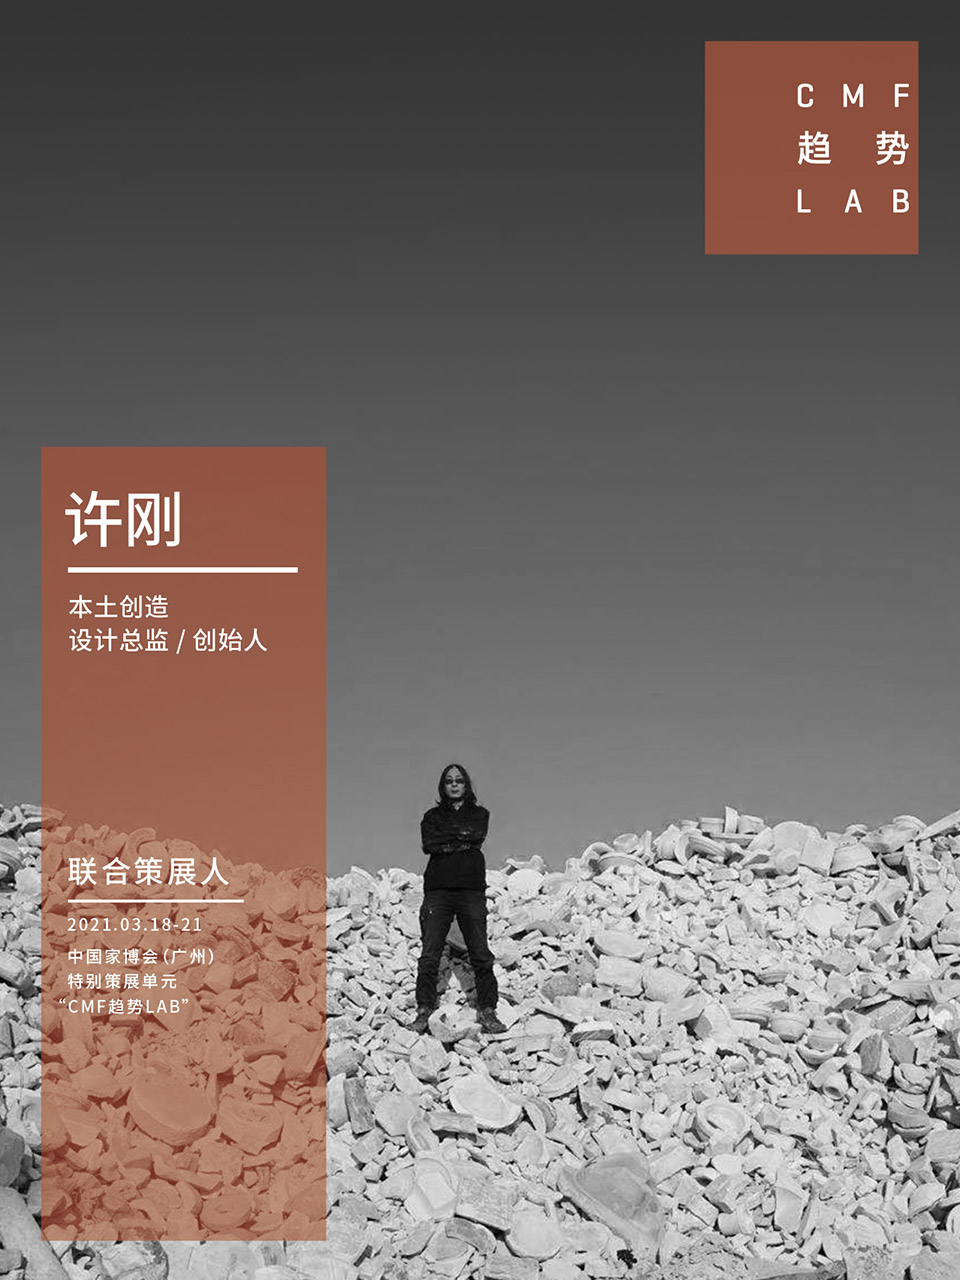 中国家博会“CMF趋势LAB” 四大主题实验室全新发布/“虚拟重构实验室”、“融手艺材料实验室”、“精致懒实验室”、“无废实验室”
-120